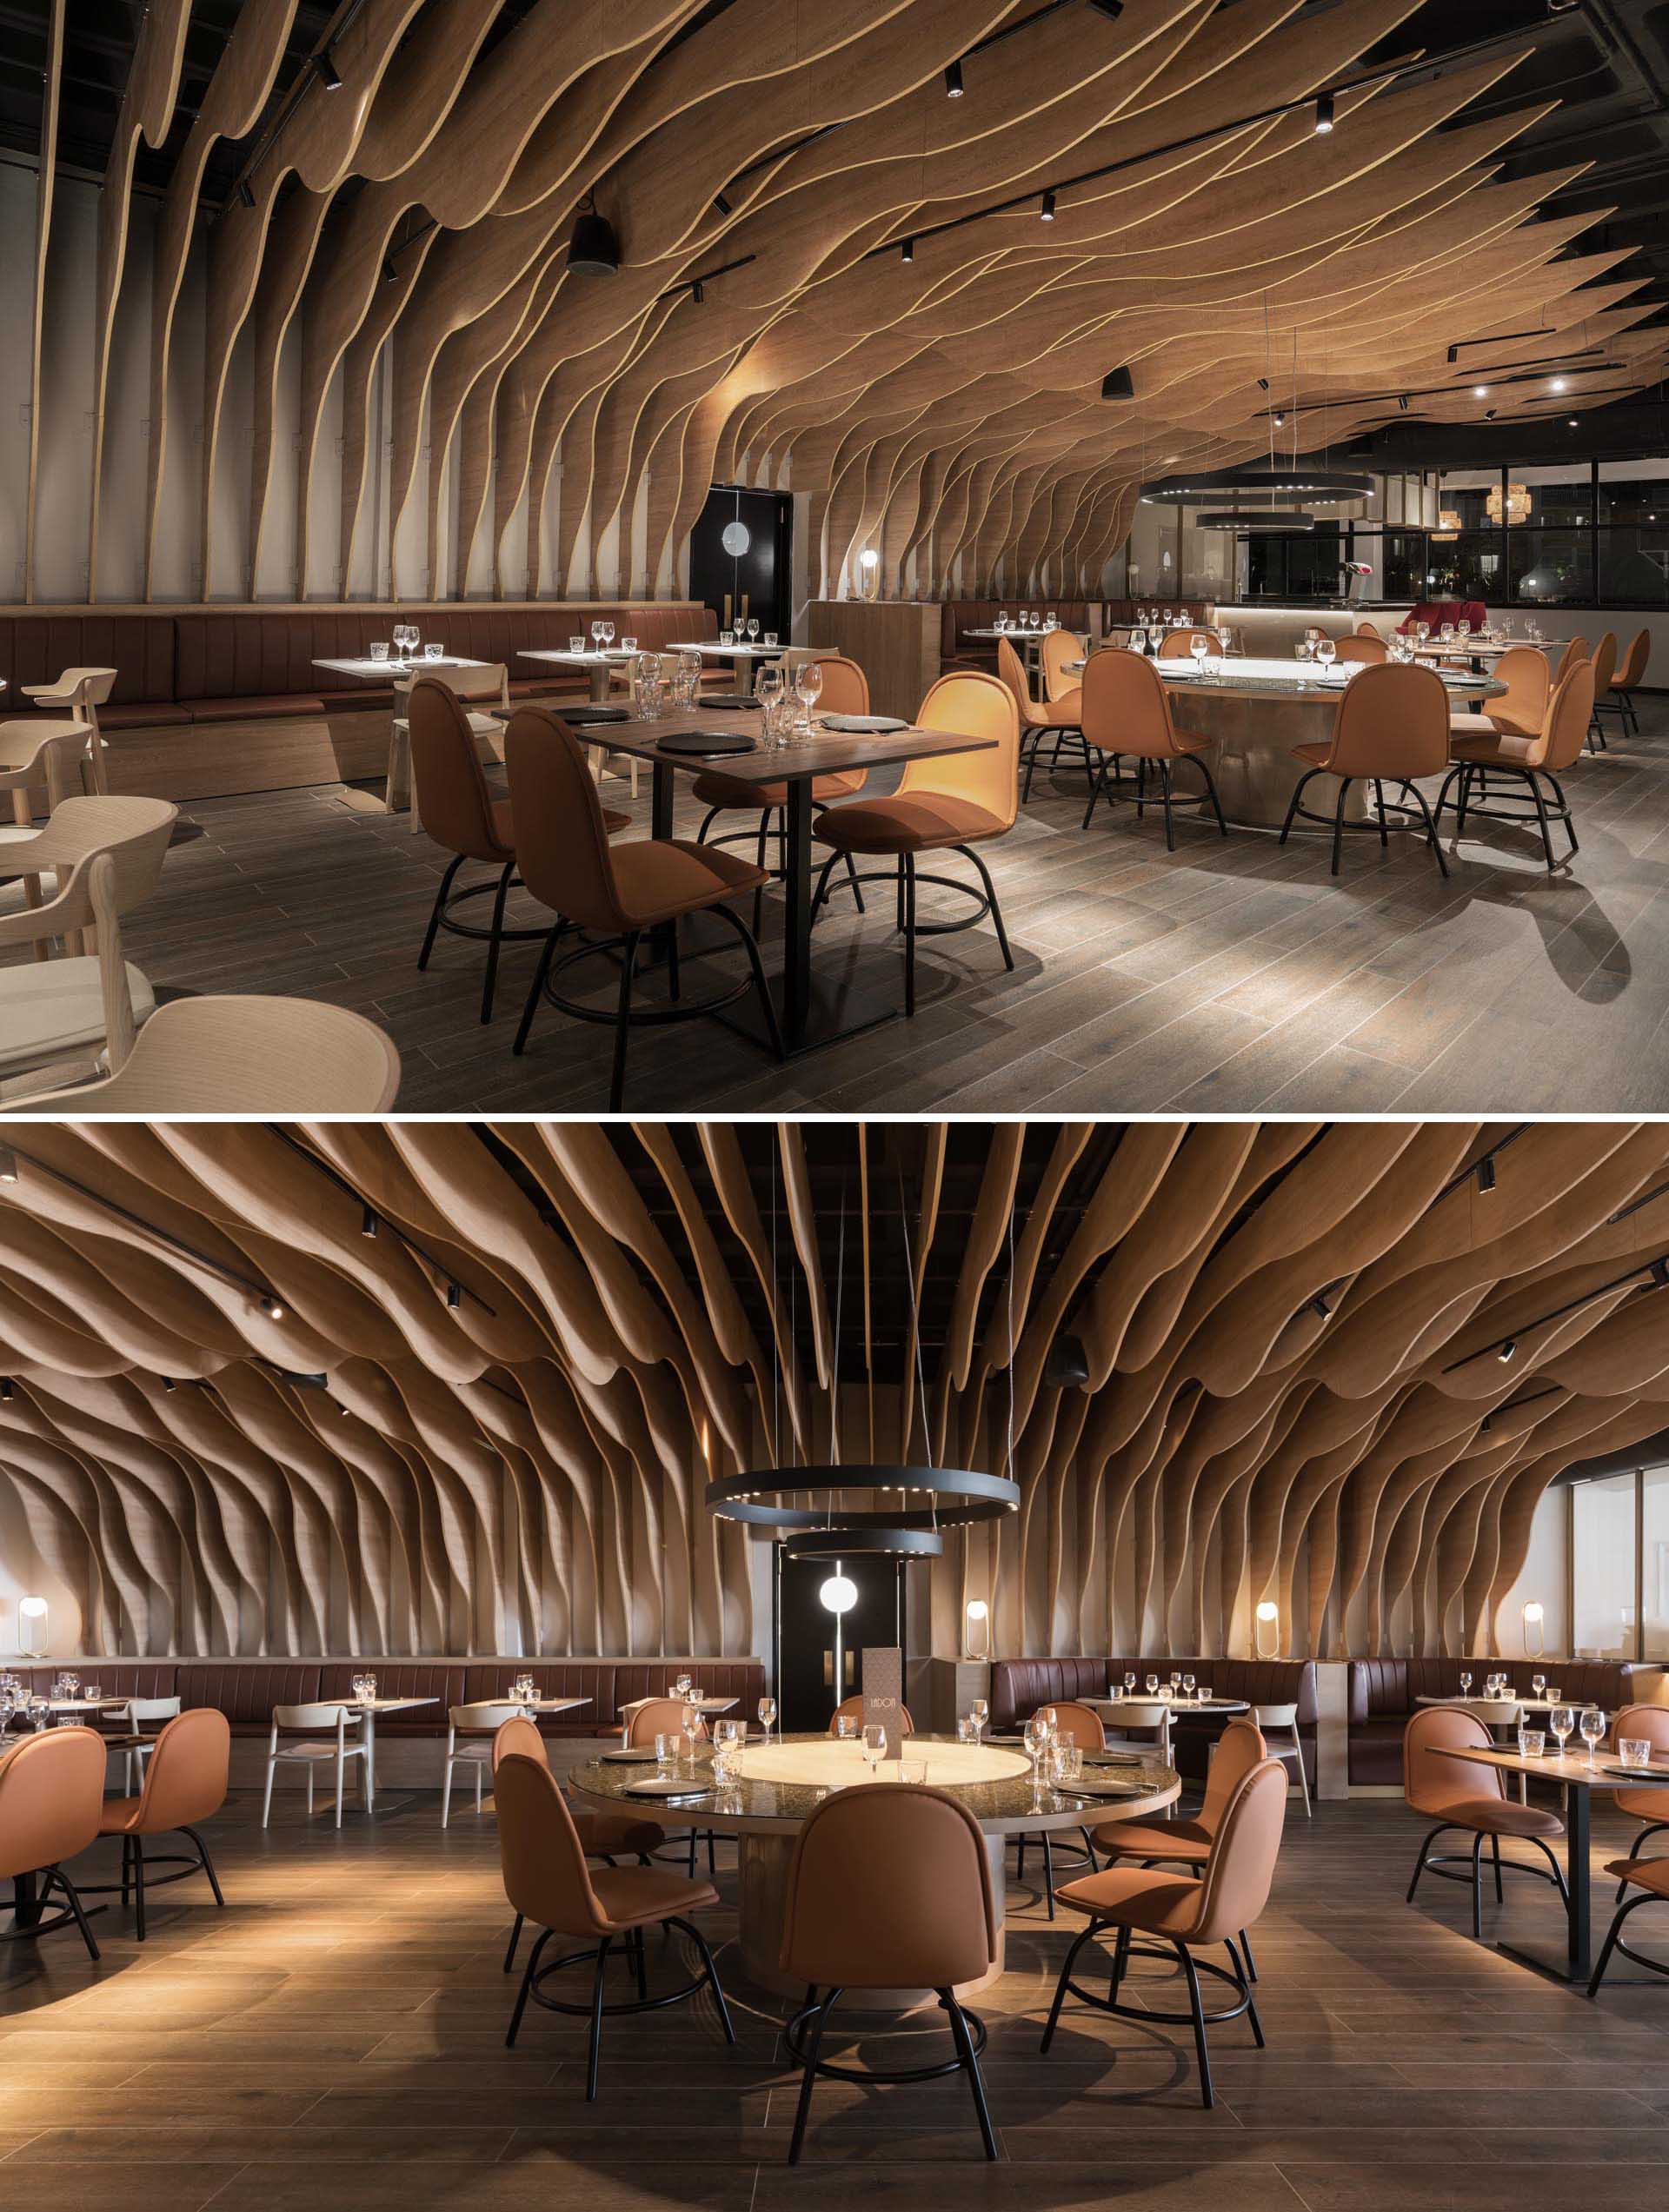 Современный ресторан со скульптурными деревянными ребрами, которые покрывают стены и потолок.